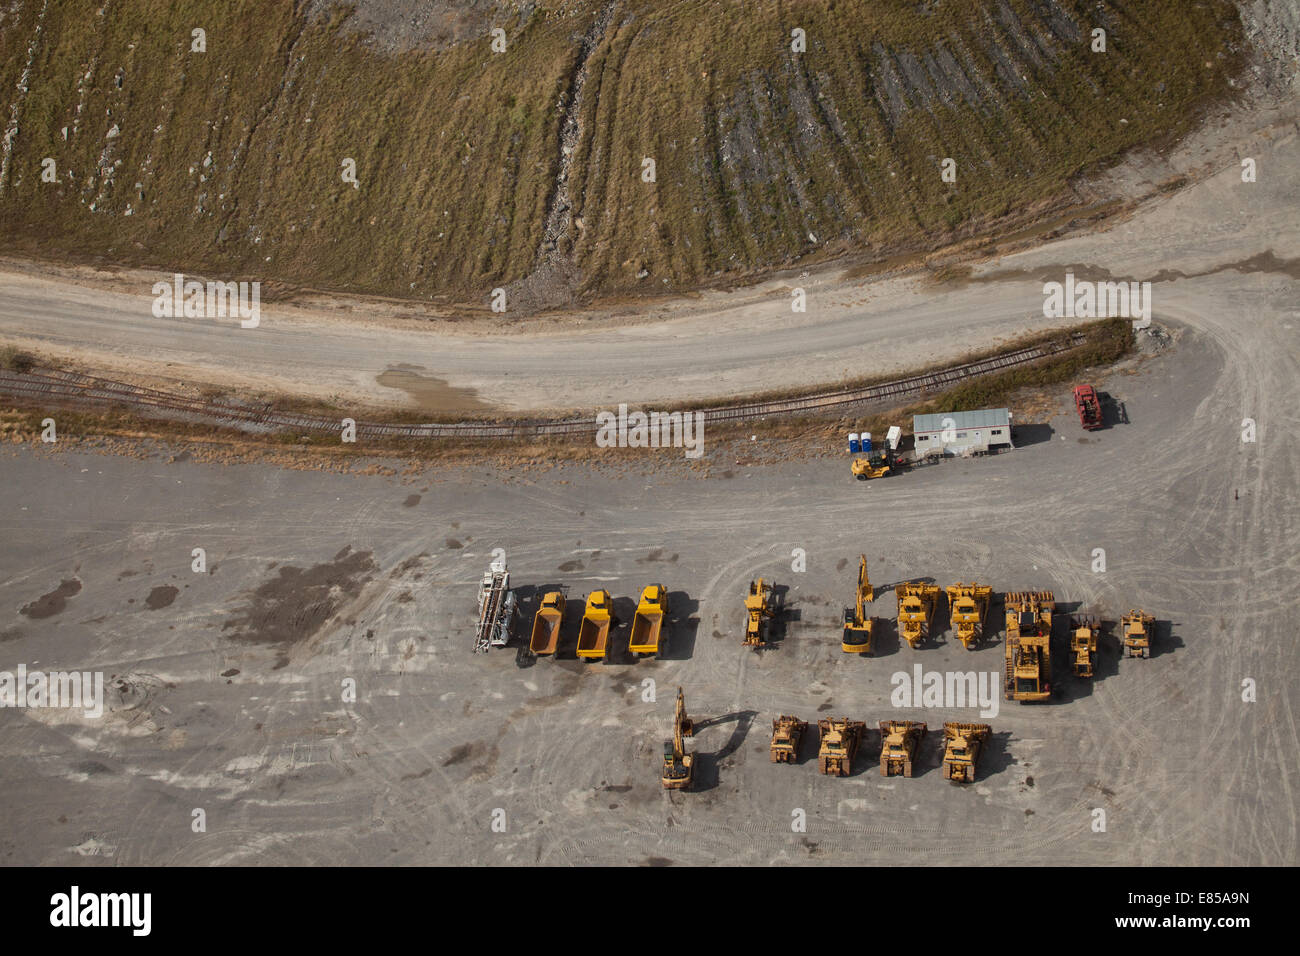 Righe di parcheggiato coal mining scavatori e camion lo scavo di cima, Appalachia, Saggio County, Virginia, Stati Uniti d'America, ad alto angolo di visione Foto Stock